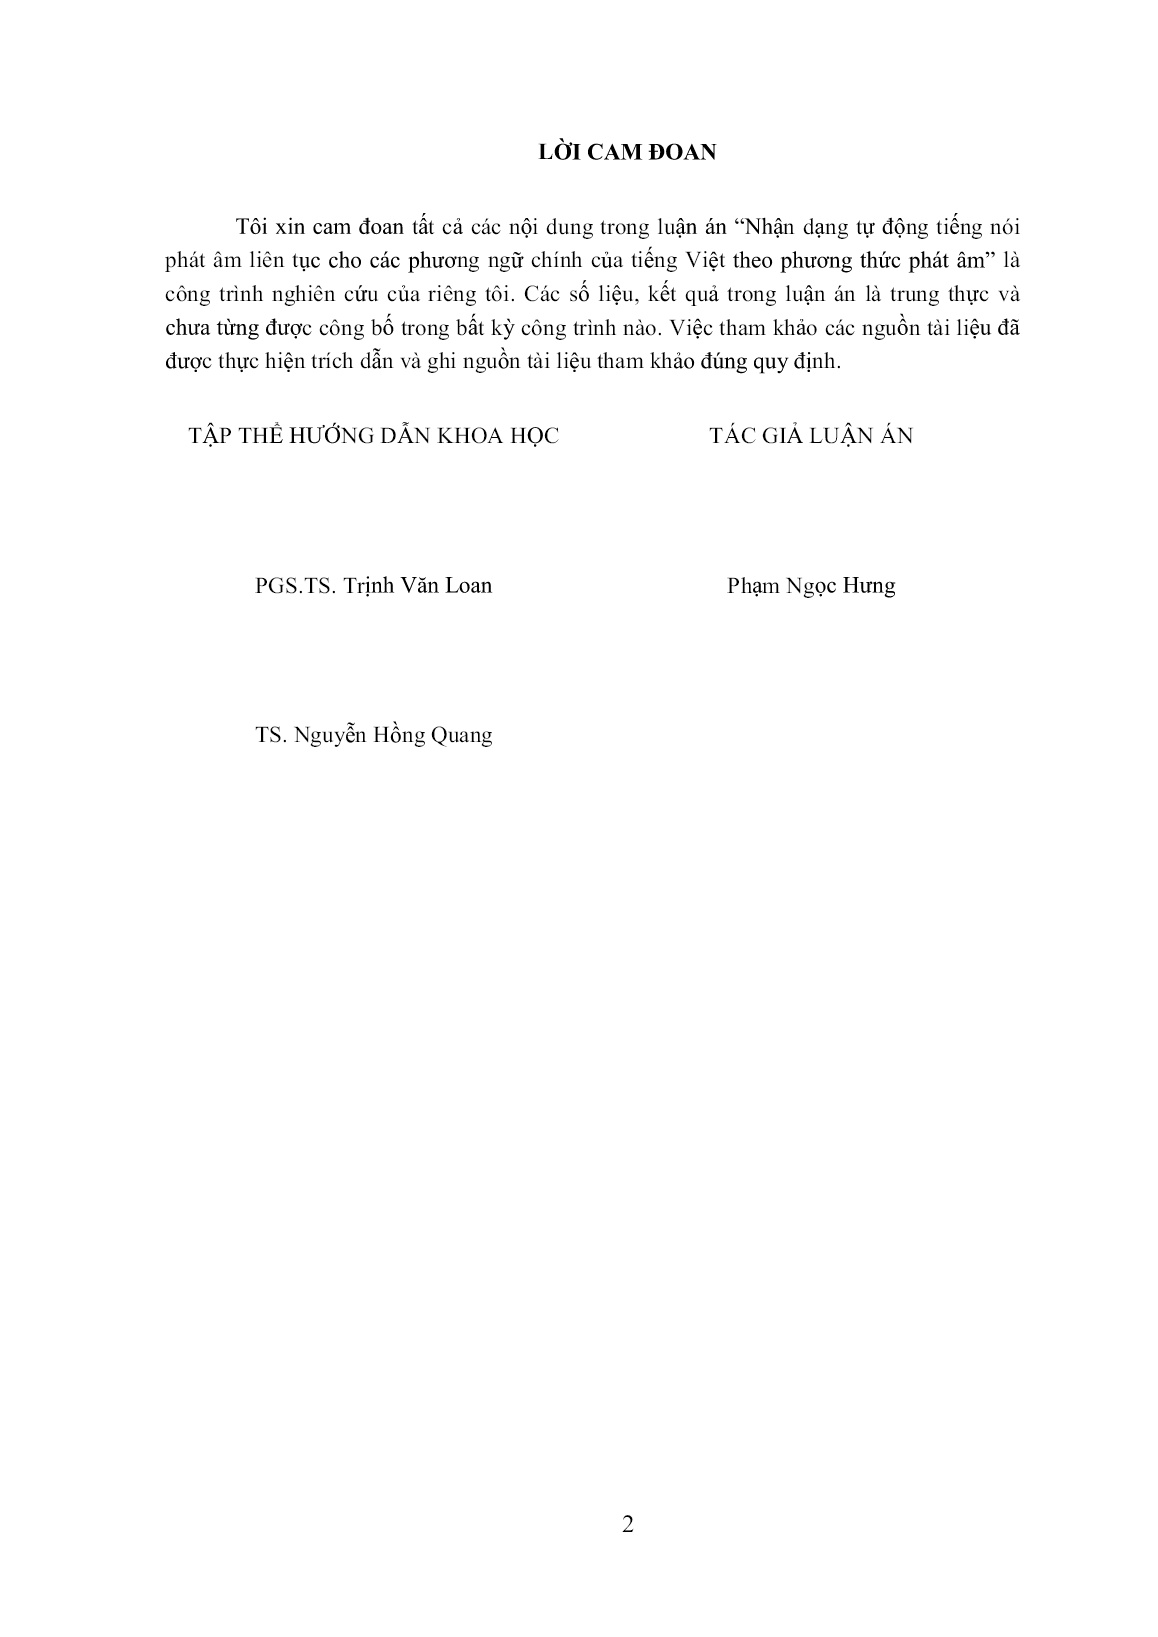 Luận án Nhận dạng tự động tiếng nói phát âm liên tục cho các phương ngữ chính của tiếng Việt theo phương thức phát âm trang 2